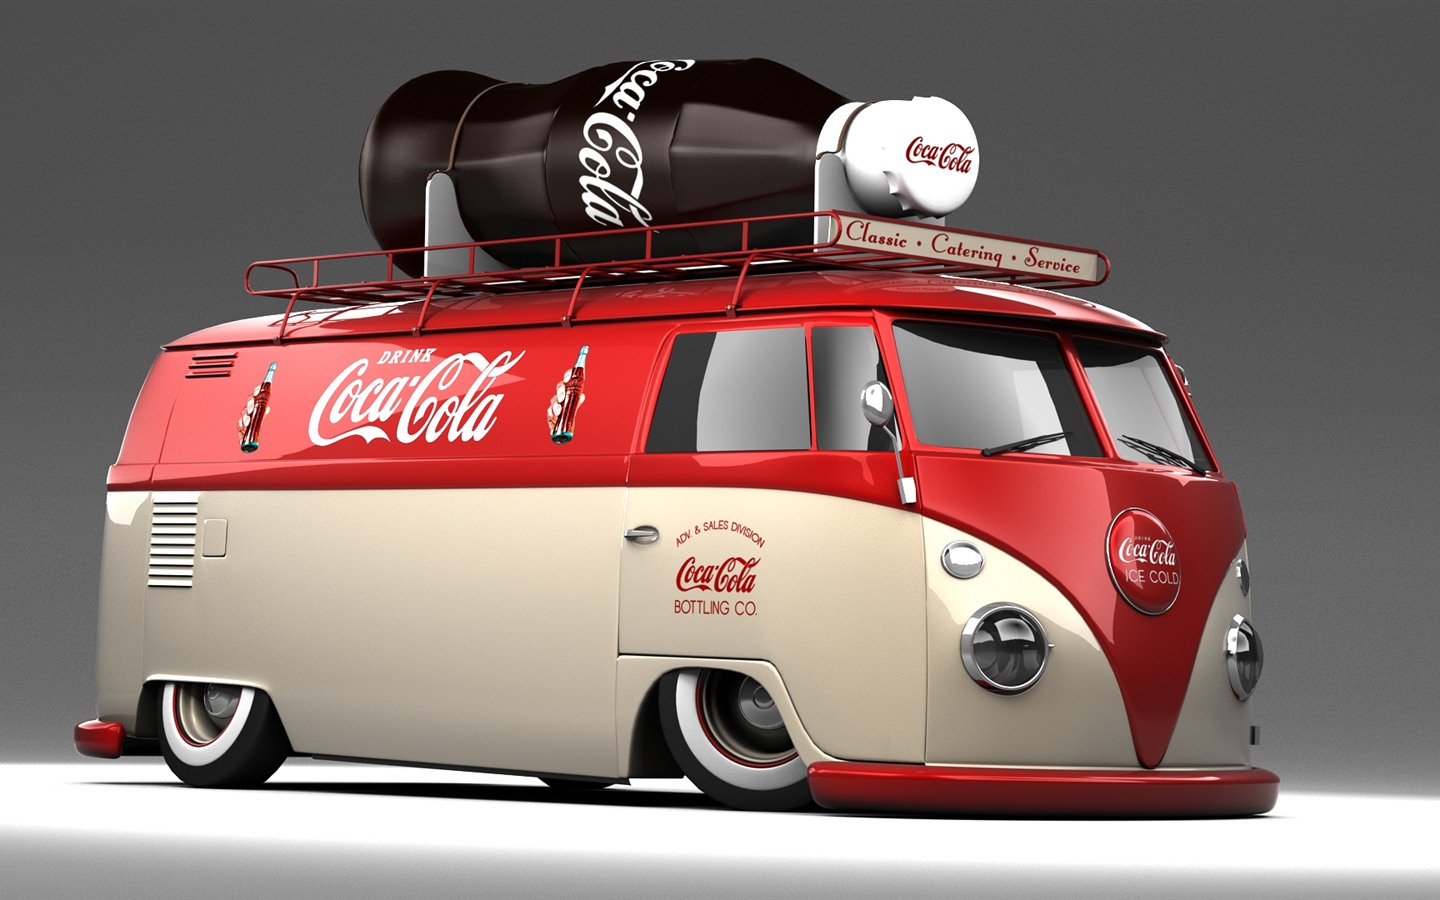 Coca-Cola beautiful ad wallpaper #29 - 1440x900